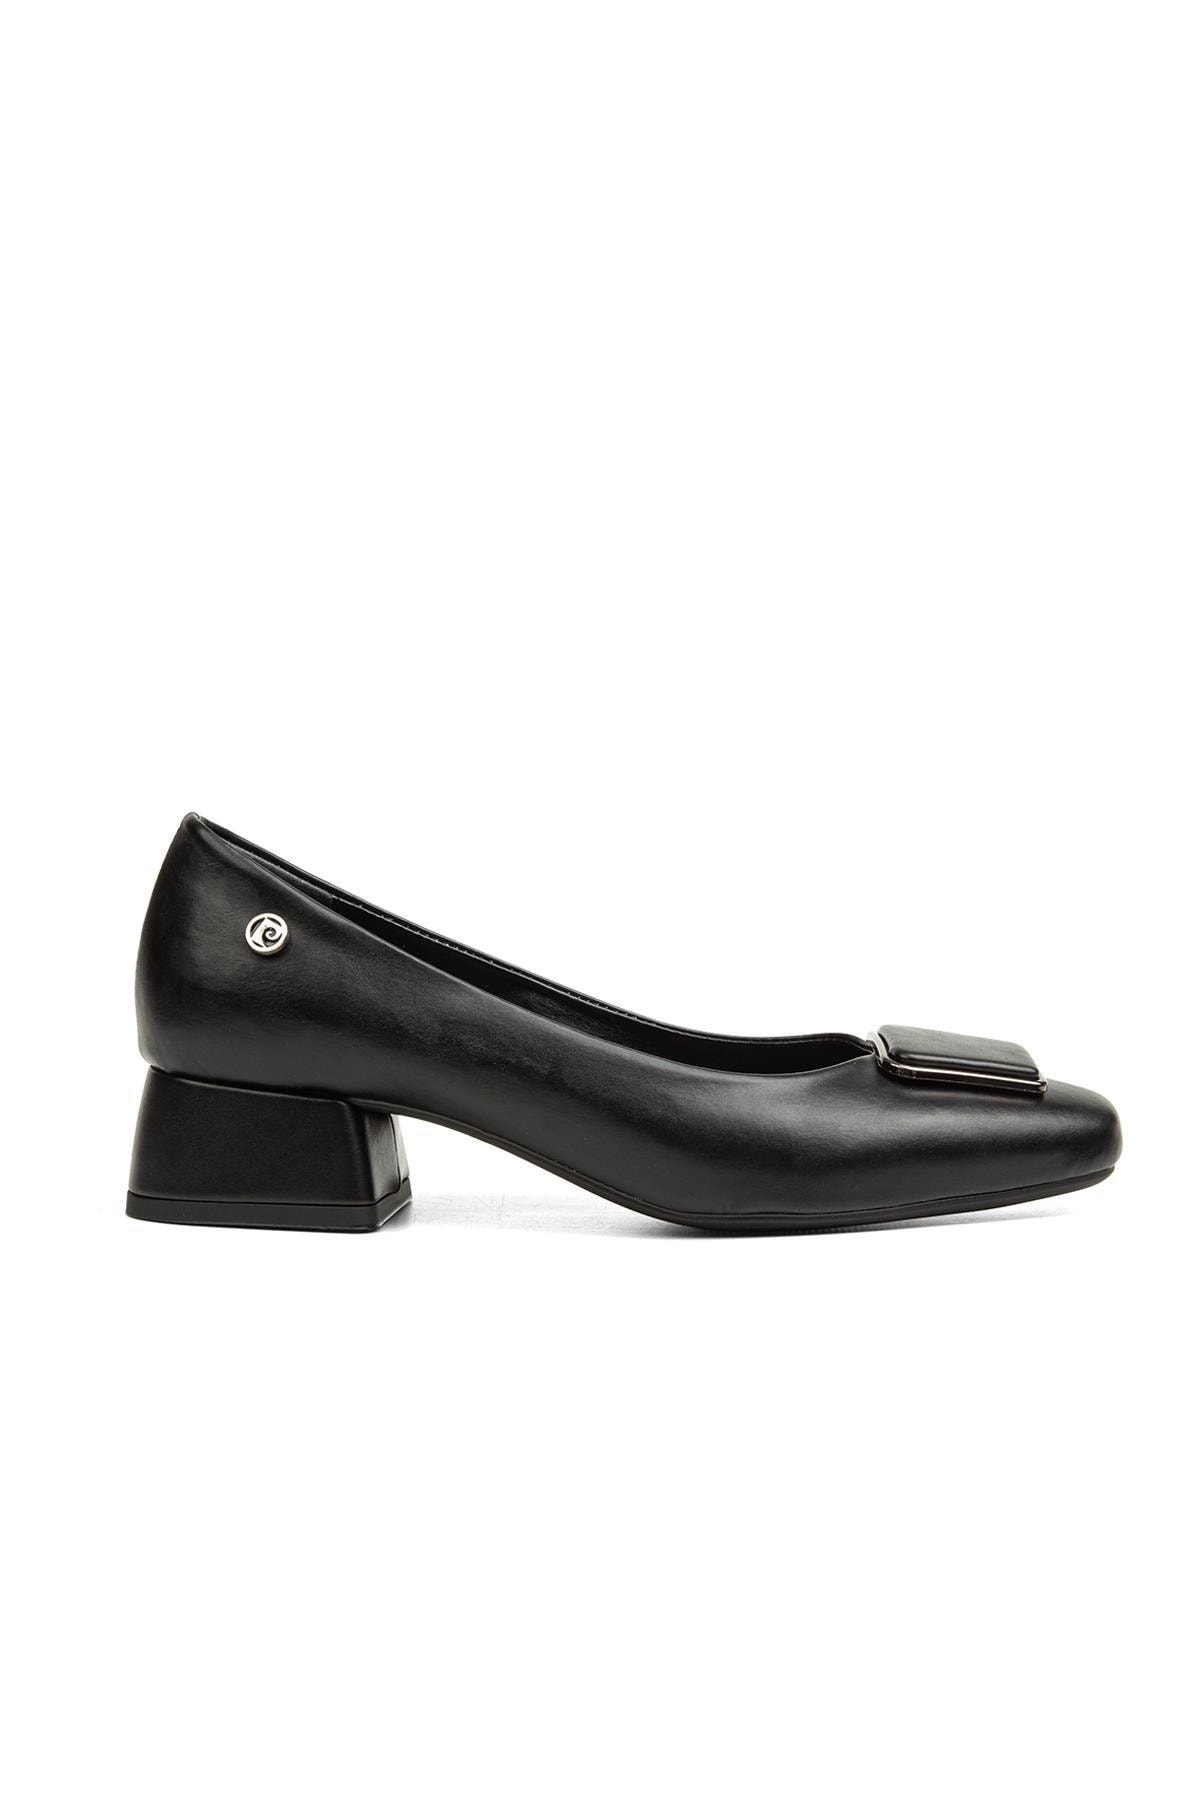 Pierre Cardin ® | Pc-52283-3592 Siyah - Kadın Topuklu Ayakkabı